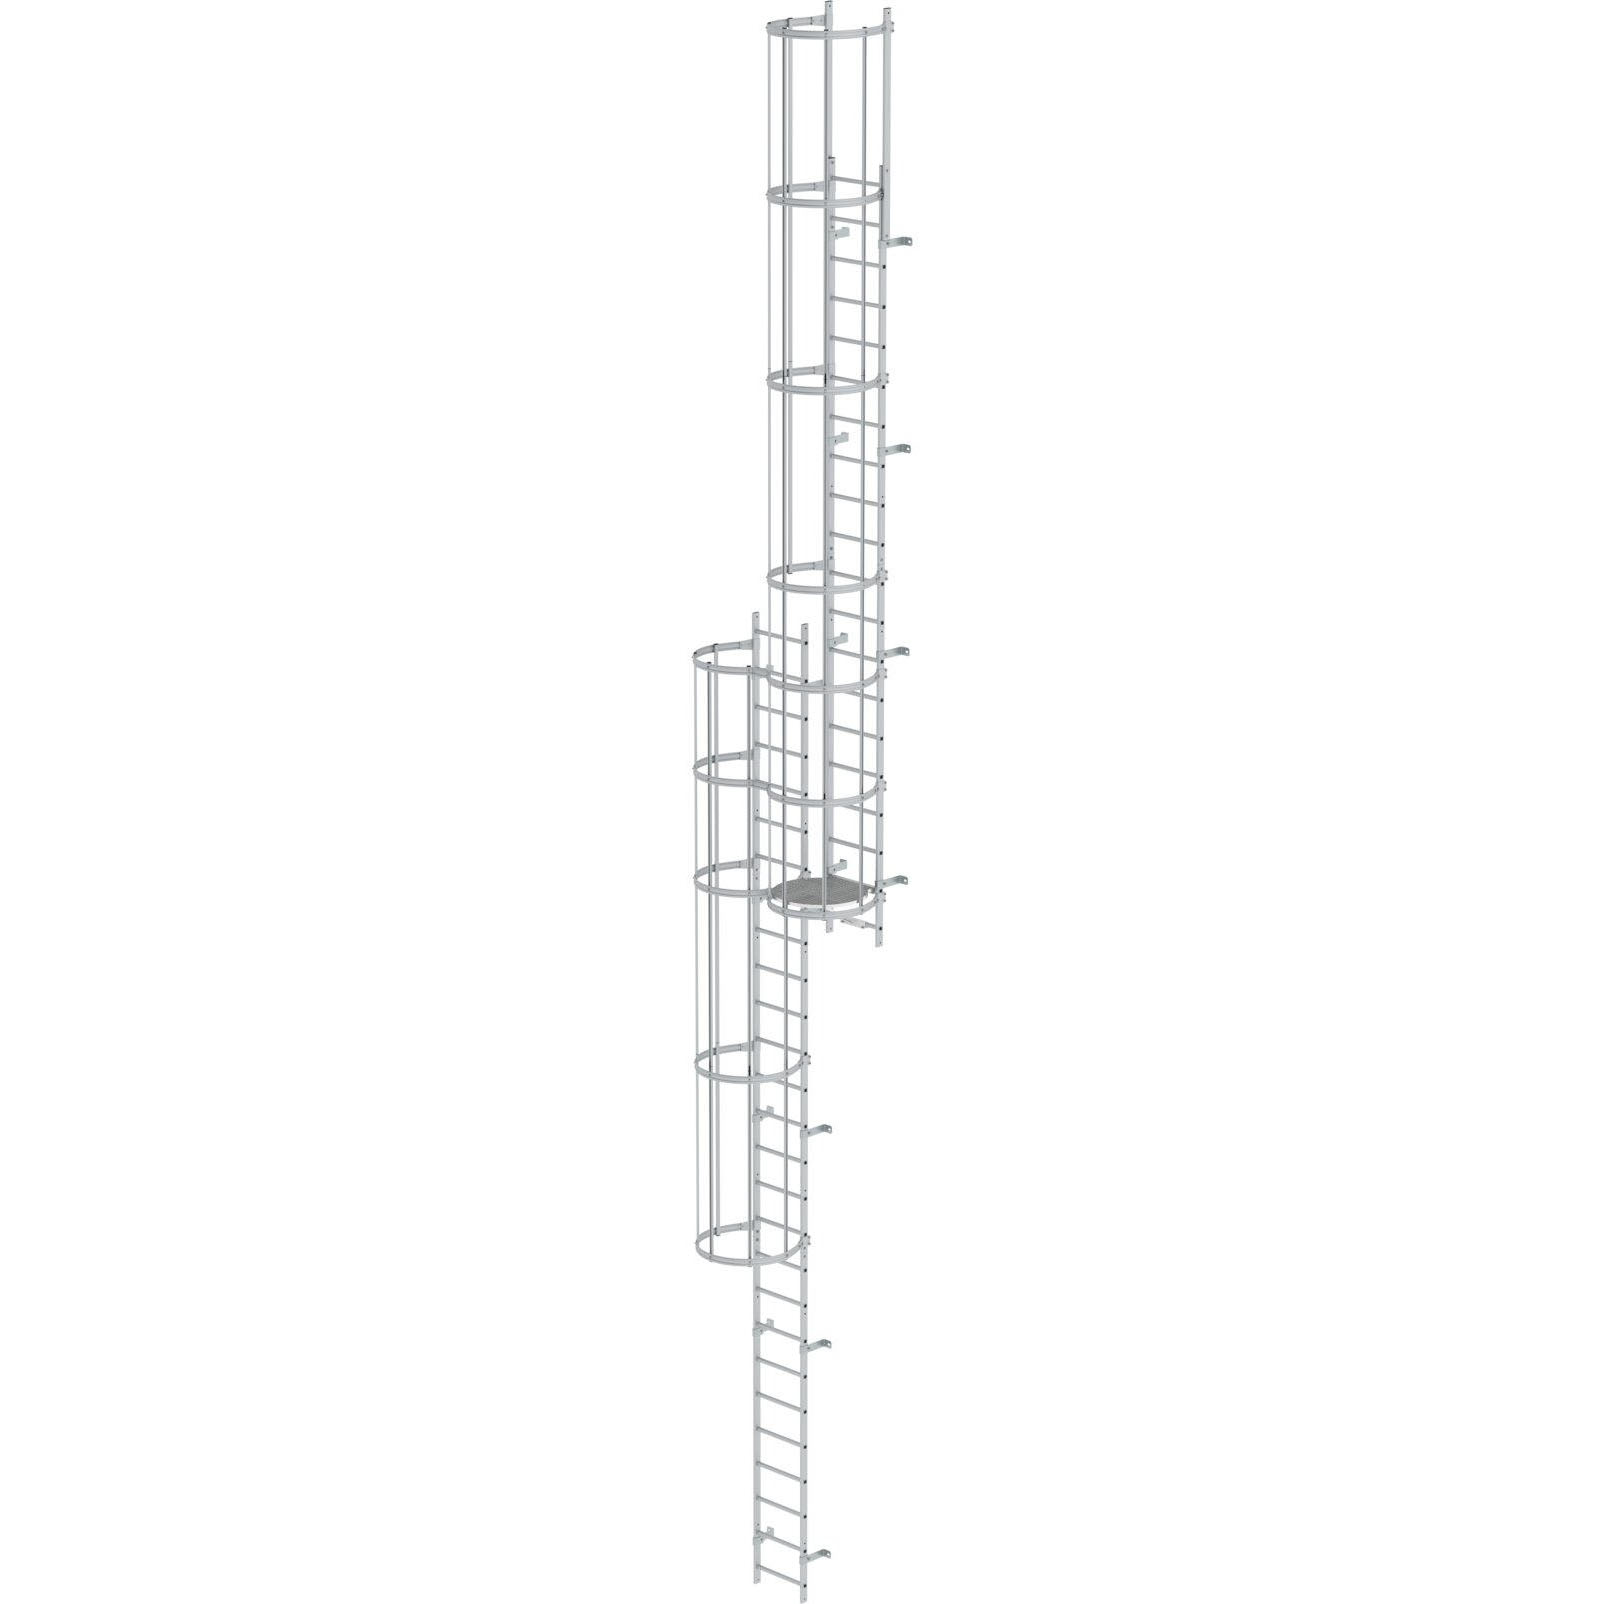 Многопролетная вертикальная лестница из анод. алюминия 12.12 м Munk 500230